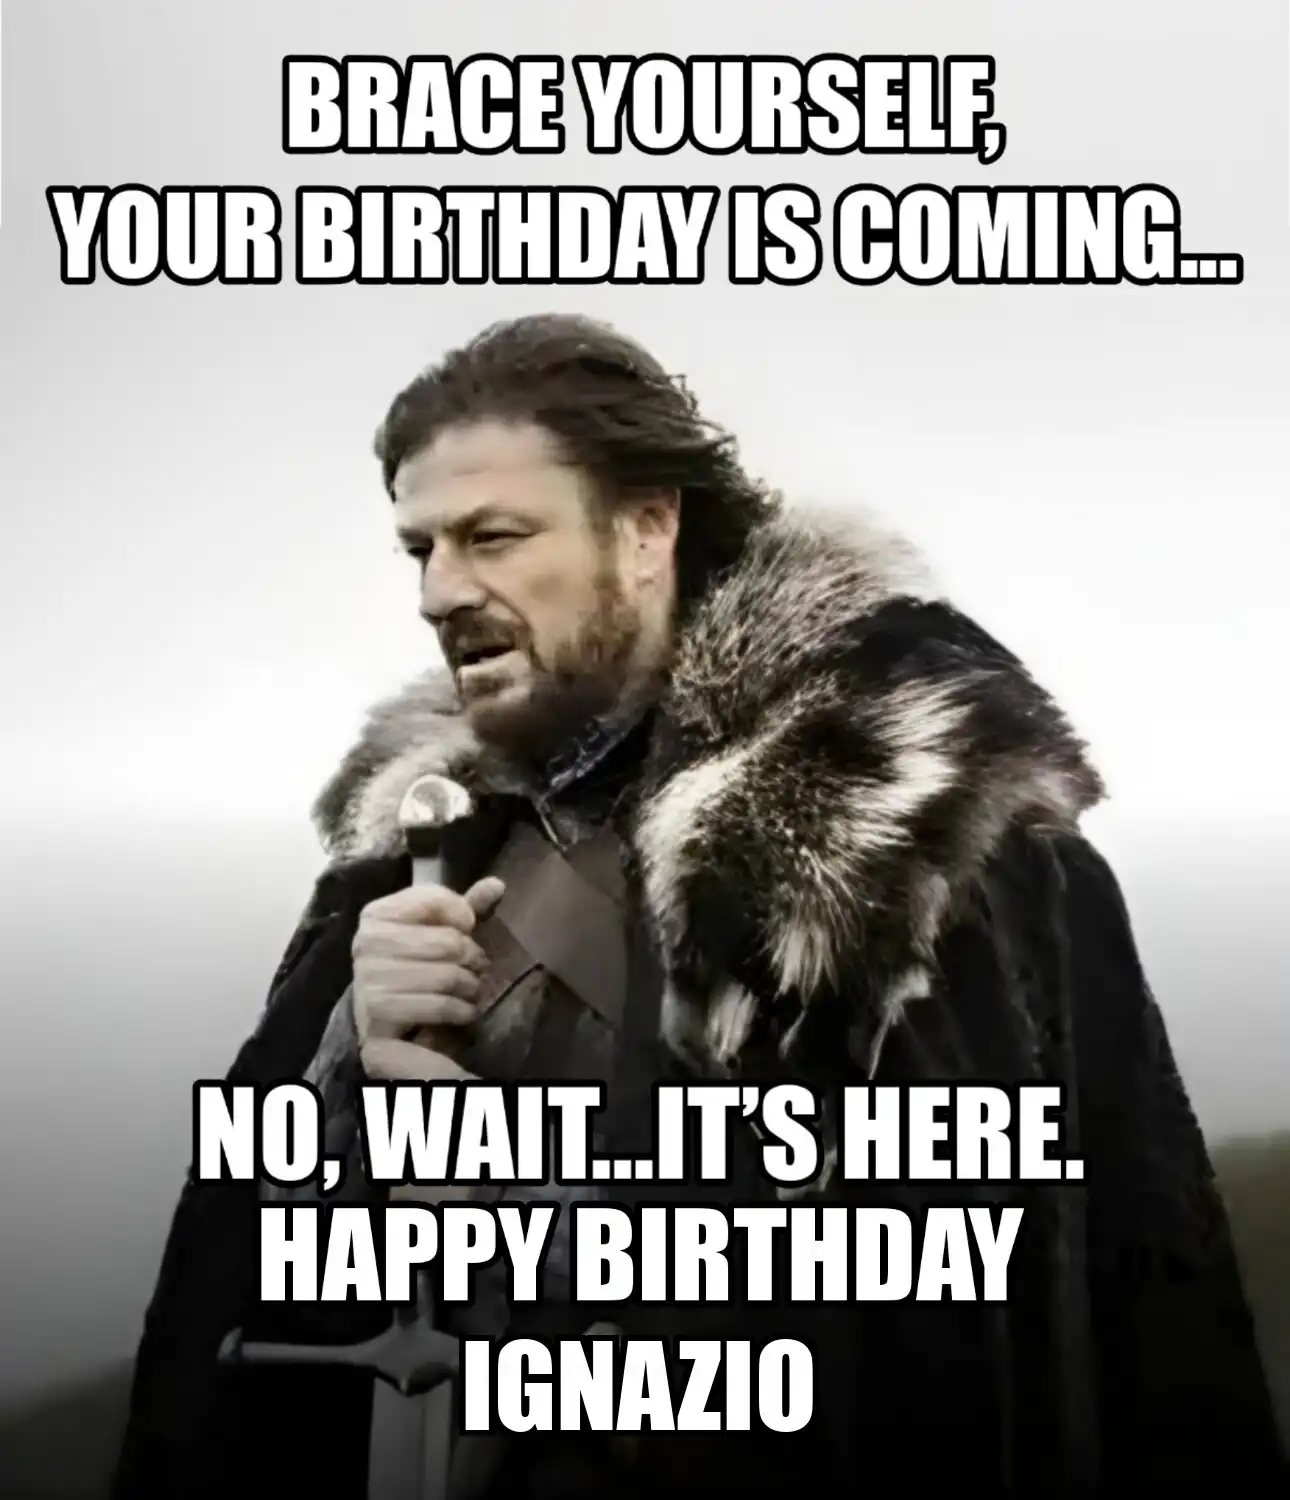 Happy Birthday Ignazio Brace Yourself Your Birthday Is Coming Meme